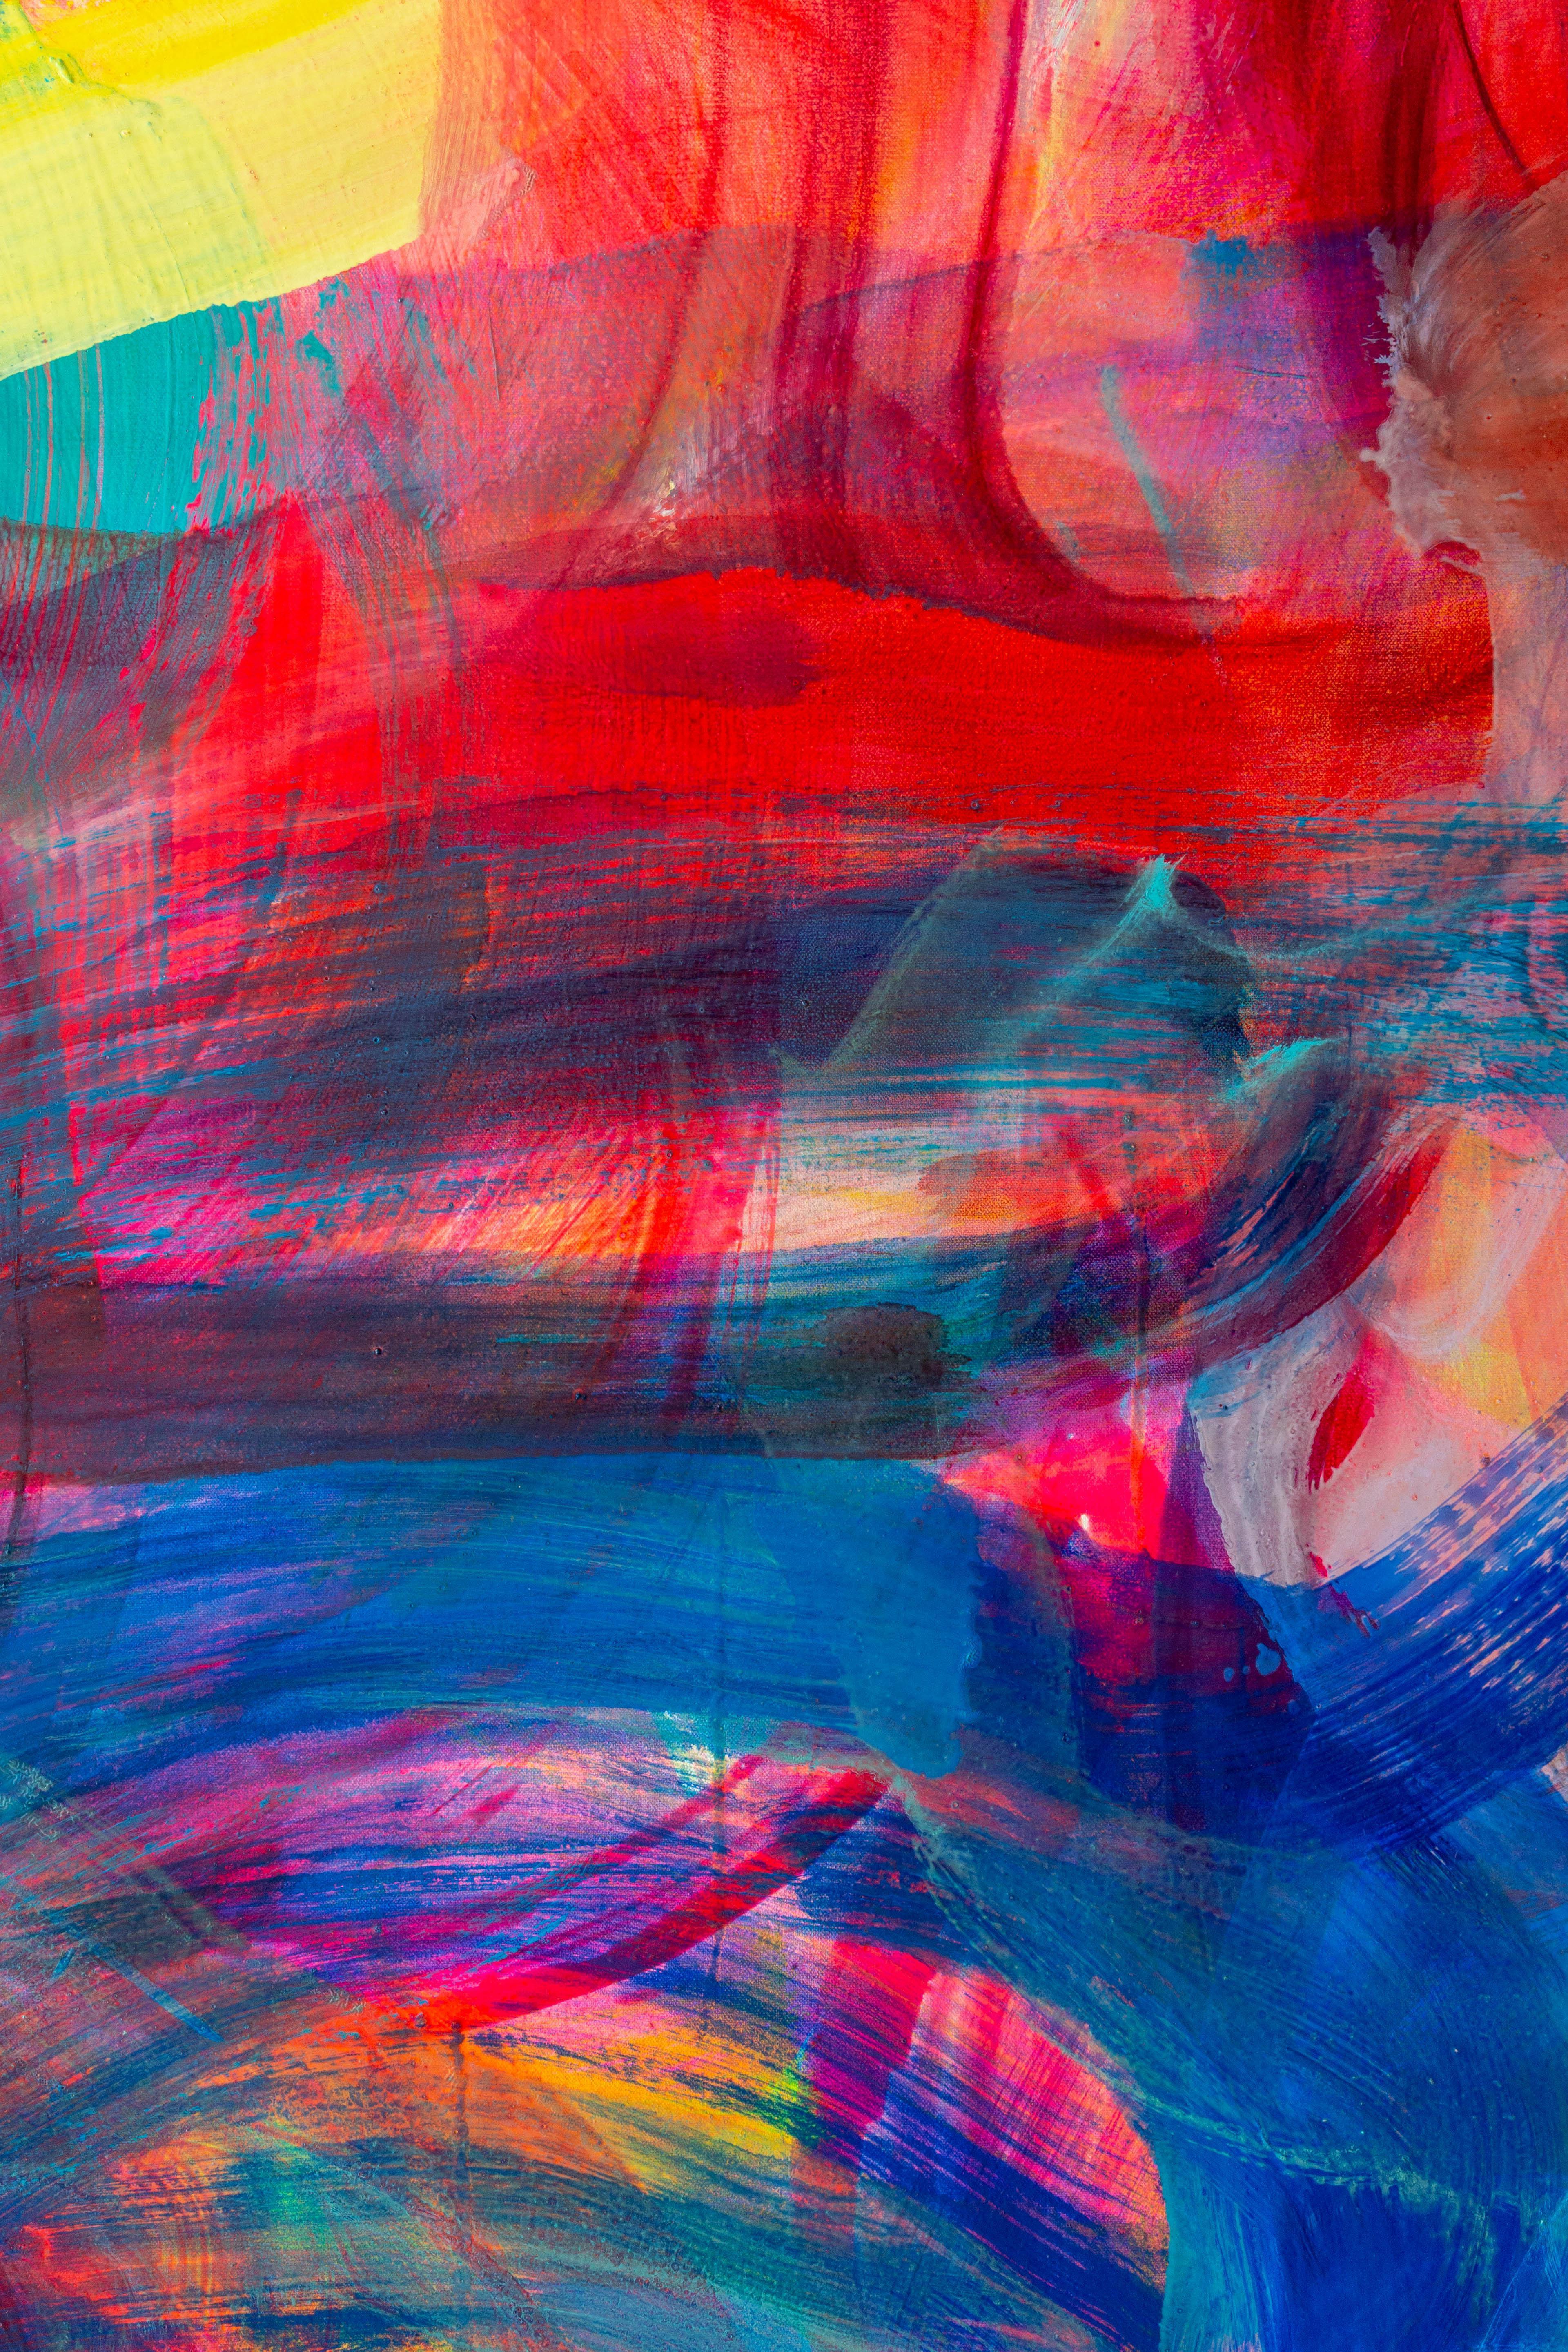 Violett, Blau und Rot verflechten sich in diesem gestischen abstrakten Gemälde von Debra Drexler.  Dieses Gemälde ist von der Intensität des Lichts und der Farben auf Hawaii inspiriert – die Künstlerin verbringt dort einen Teil ihrer Zeit und den